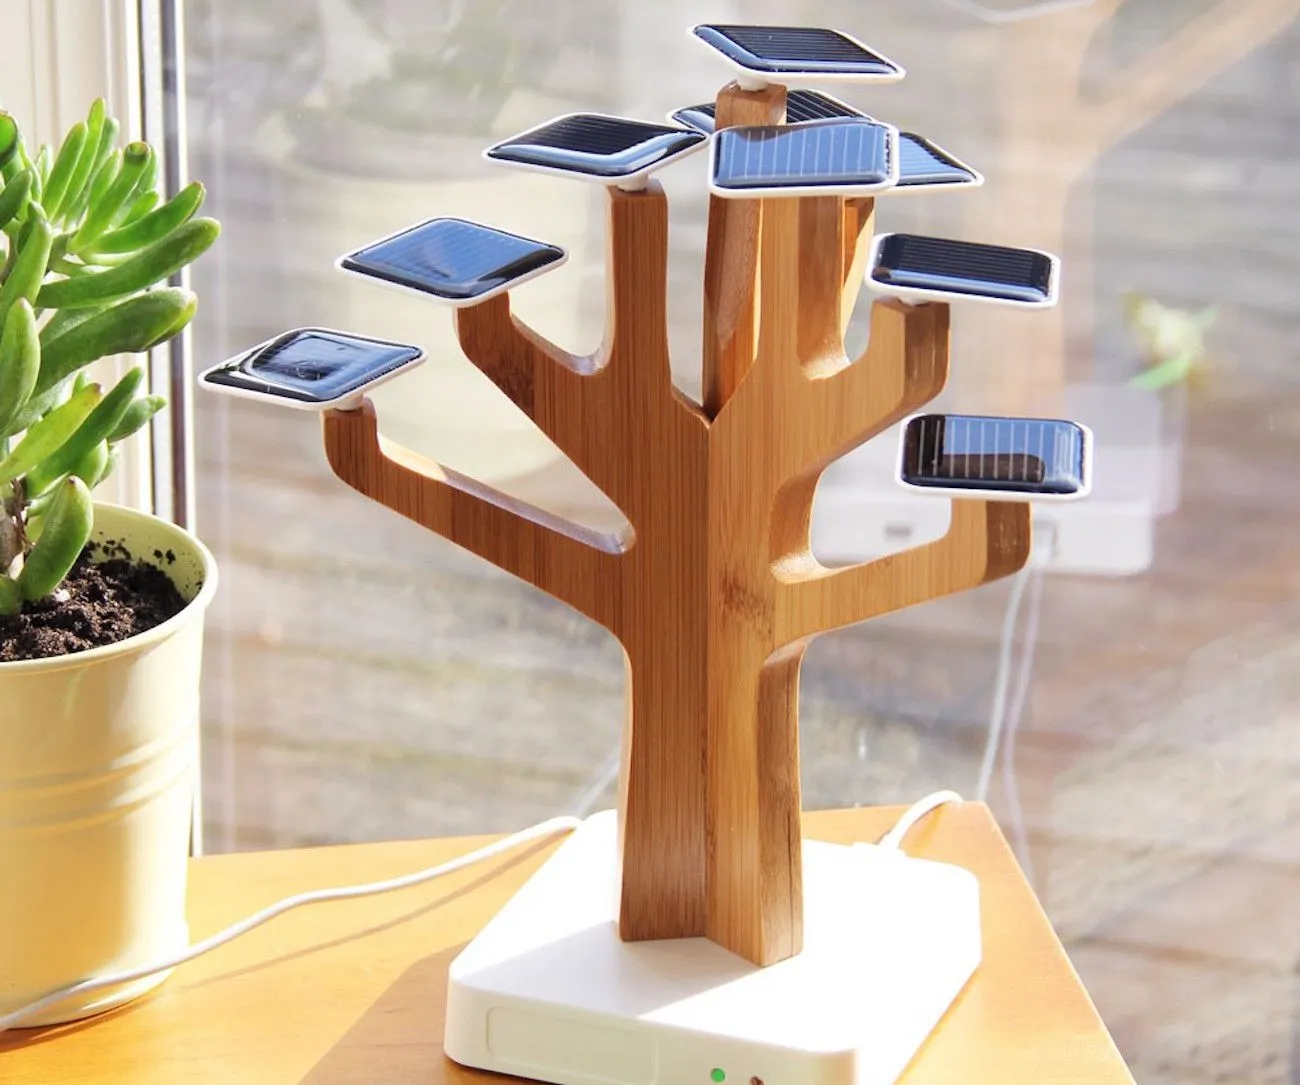 Солнечные батареи Suntree Charger Power Bank для мобильных телефонов, творческий солярий зарядки жизни дерева дома украшения подарка